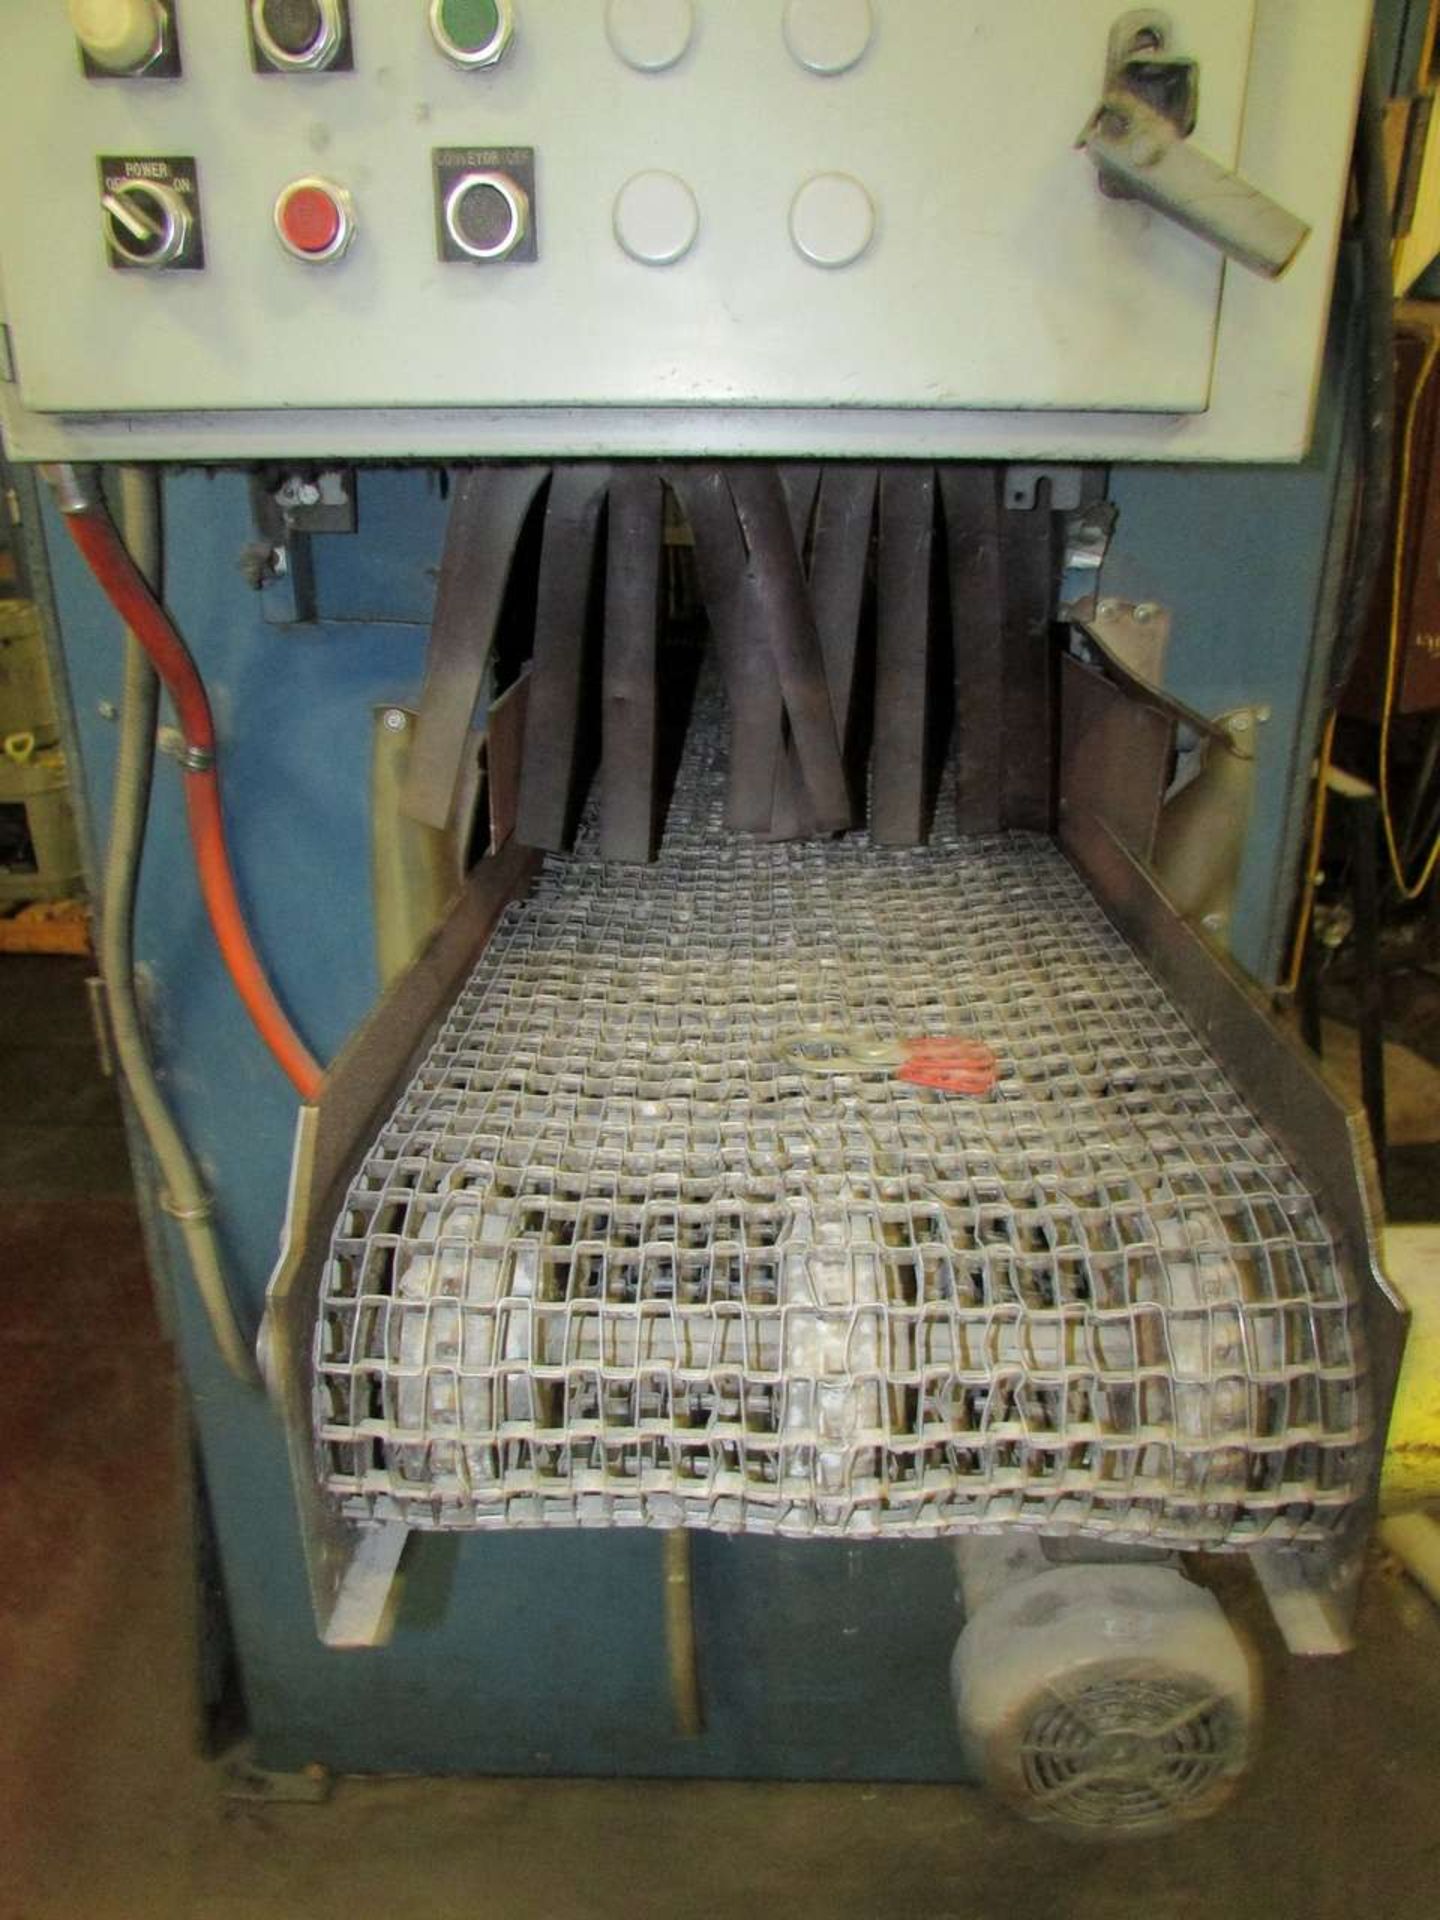 Shop Built Conveyor Parts Dryers - Image 5 of 26